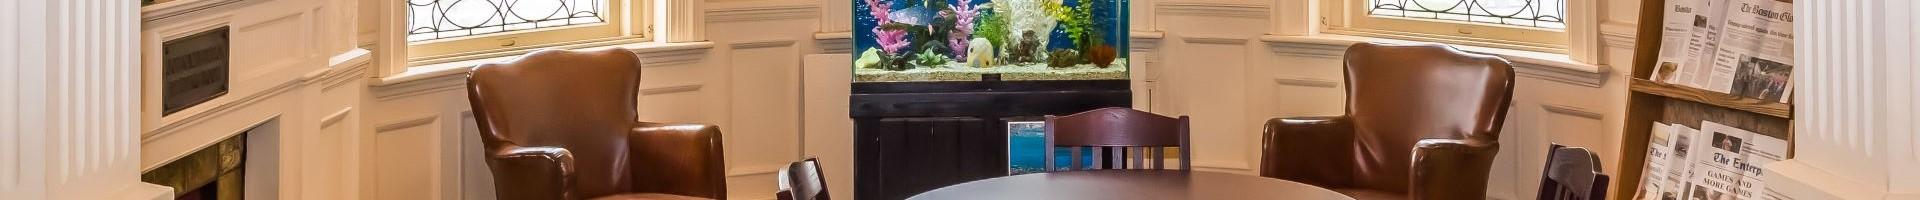 Herrick Reading Room with aquarium